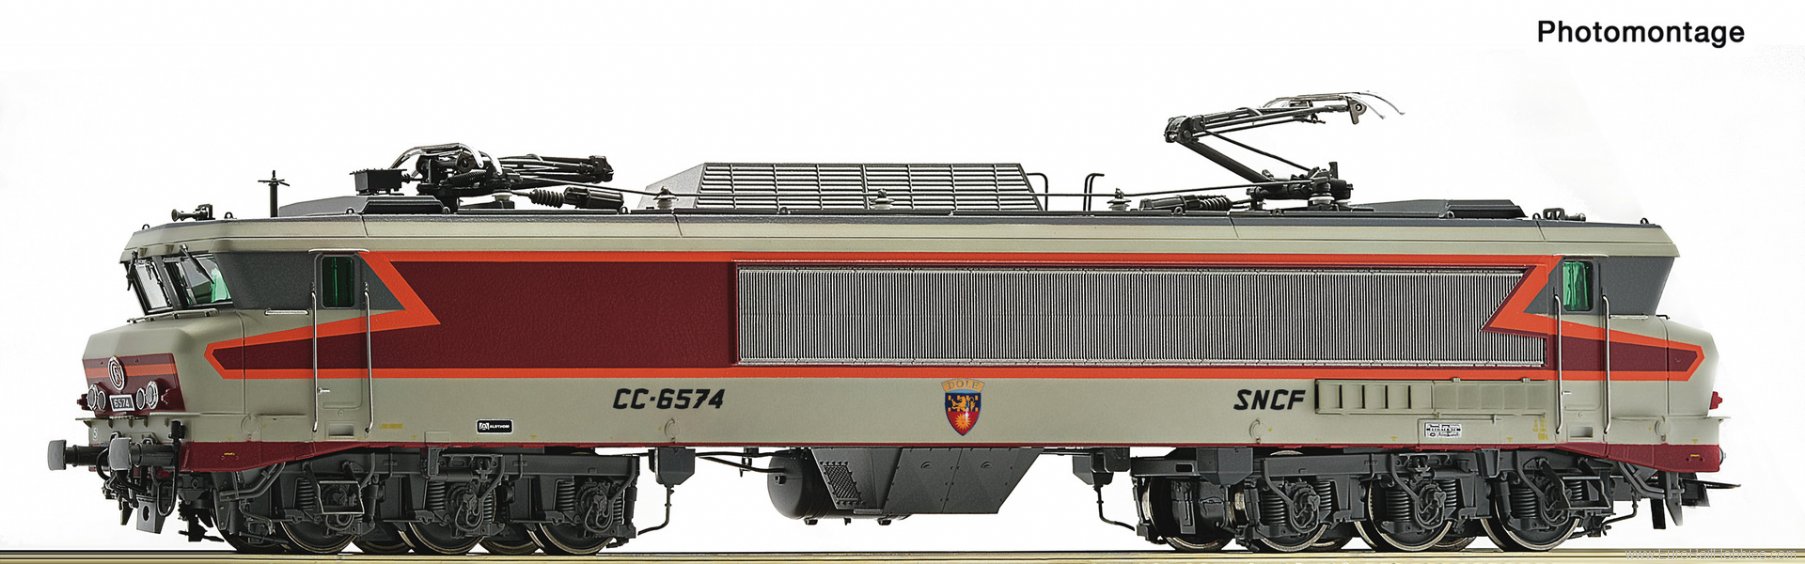 Roco 70619 Electric locomotive CC 6574, SNCF (Digital So